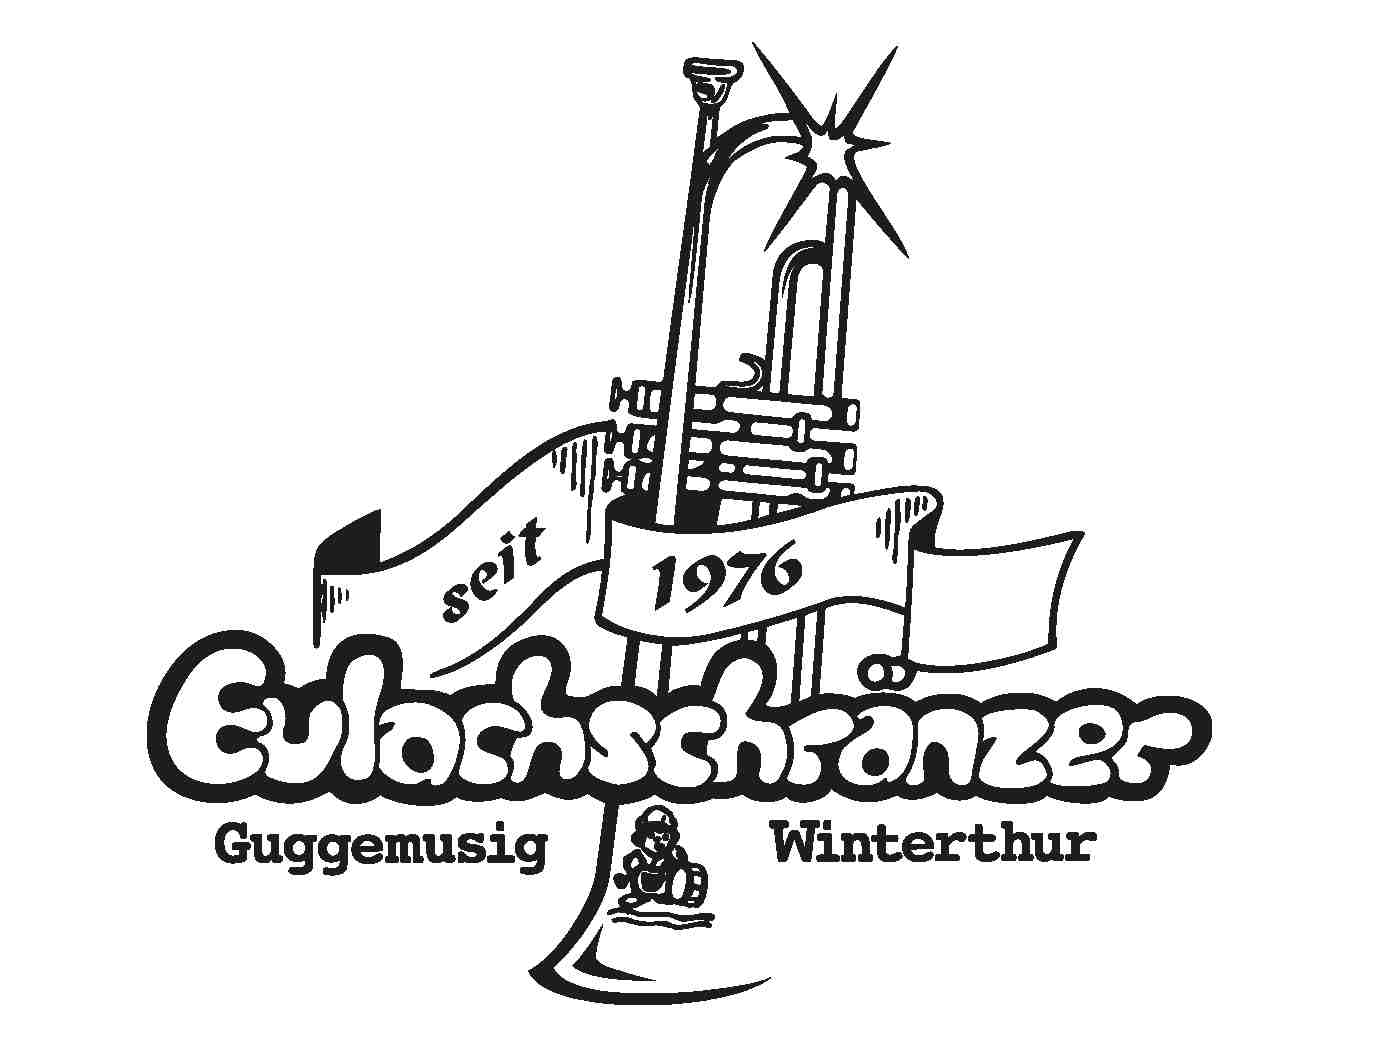 Eulachschränzer